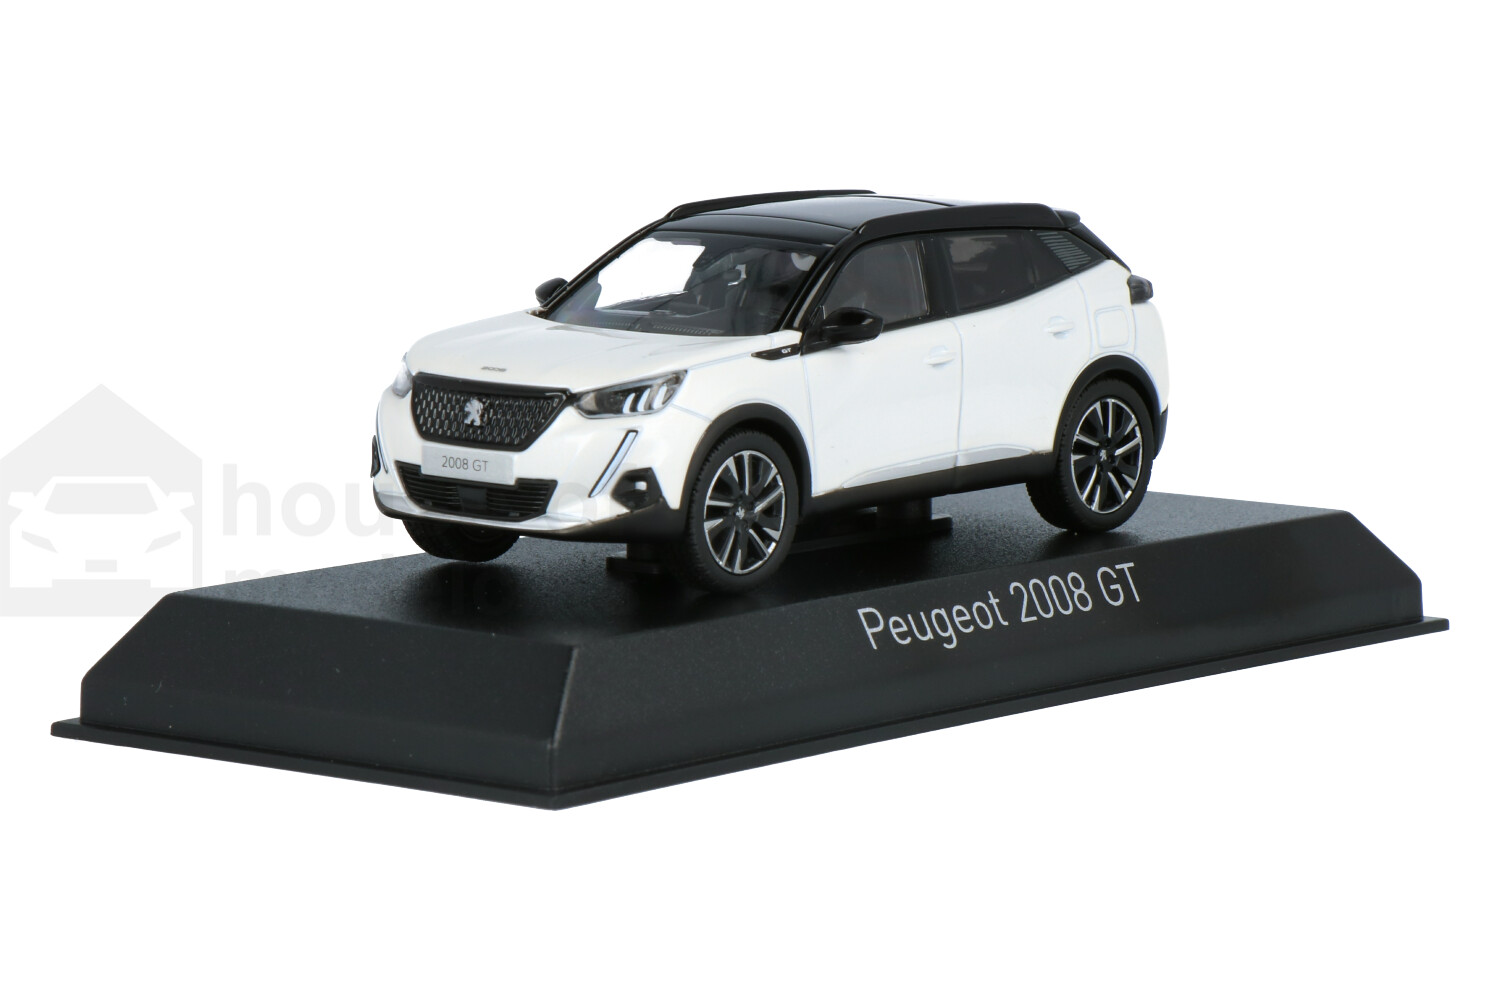 Peugeot-2008-472862_13153551094728624-NorevPeugeot-2008-472862_Houseofmodelcars_.jpg